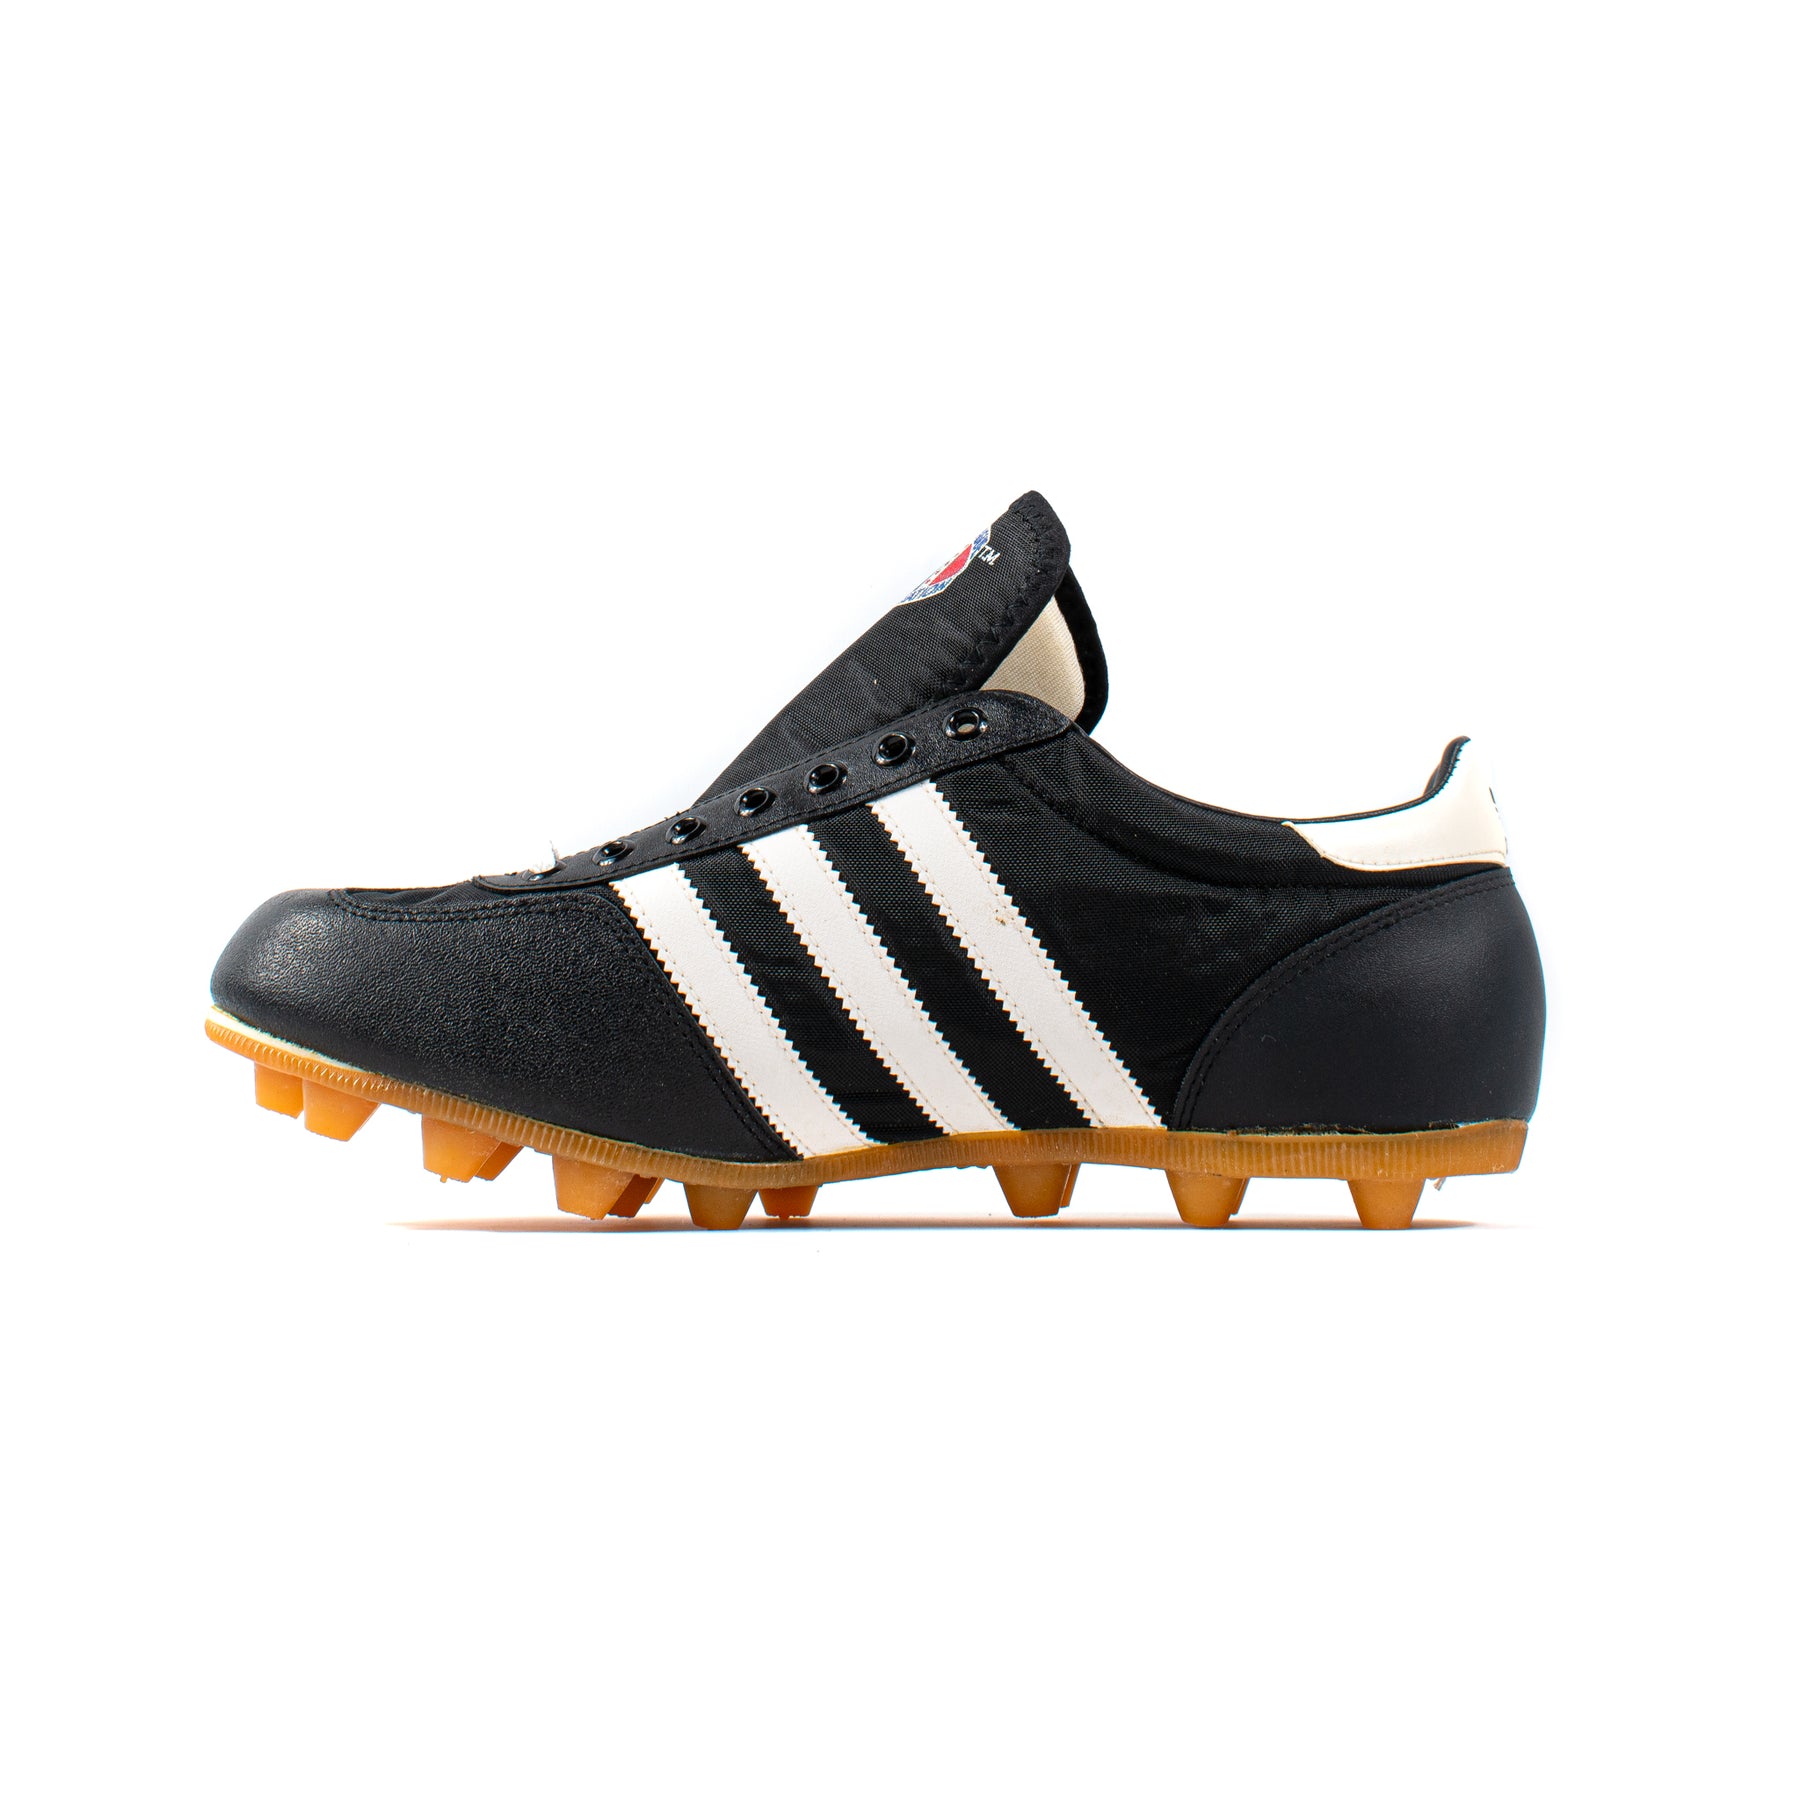 Komkommer De beginsel Adidas NFLPA Football Boots 1980s – Classic Soccer Cleats